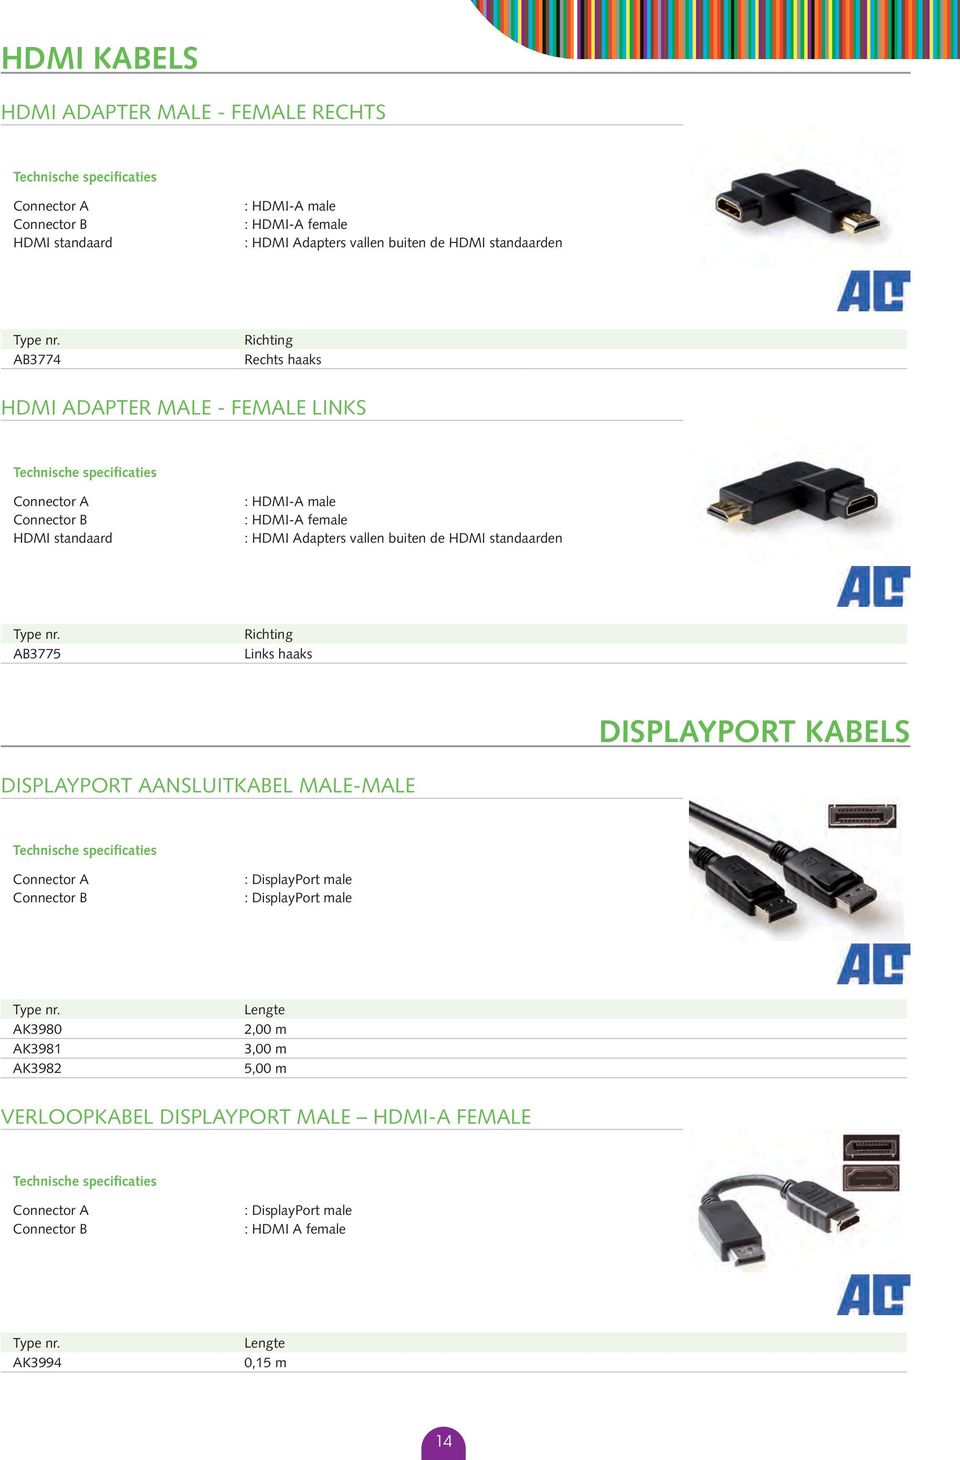 Adapters vallen buiten de HDMI standaarden AB3775 Richting Links haaks displayport kabels DisplayPort aansluitkabel male-male :